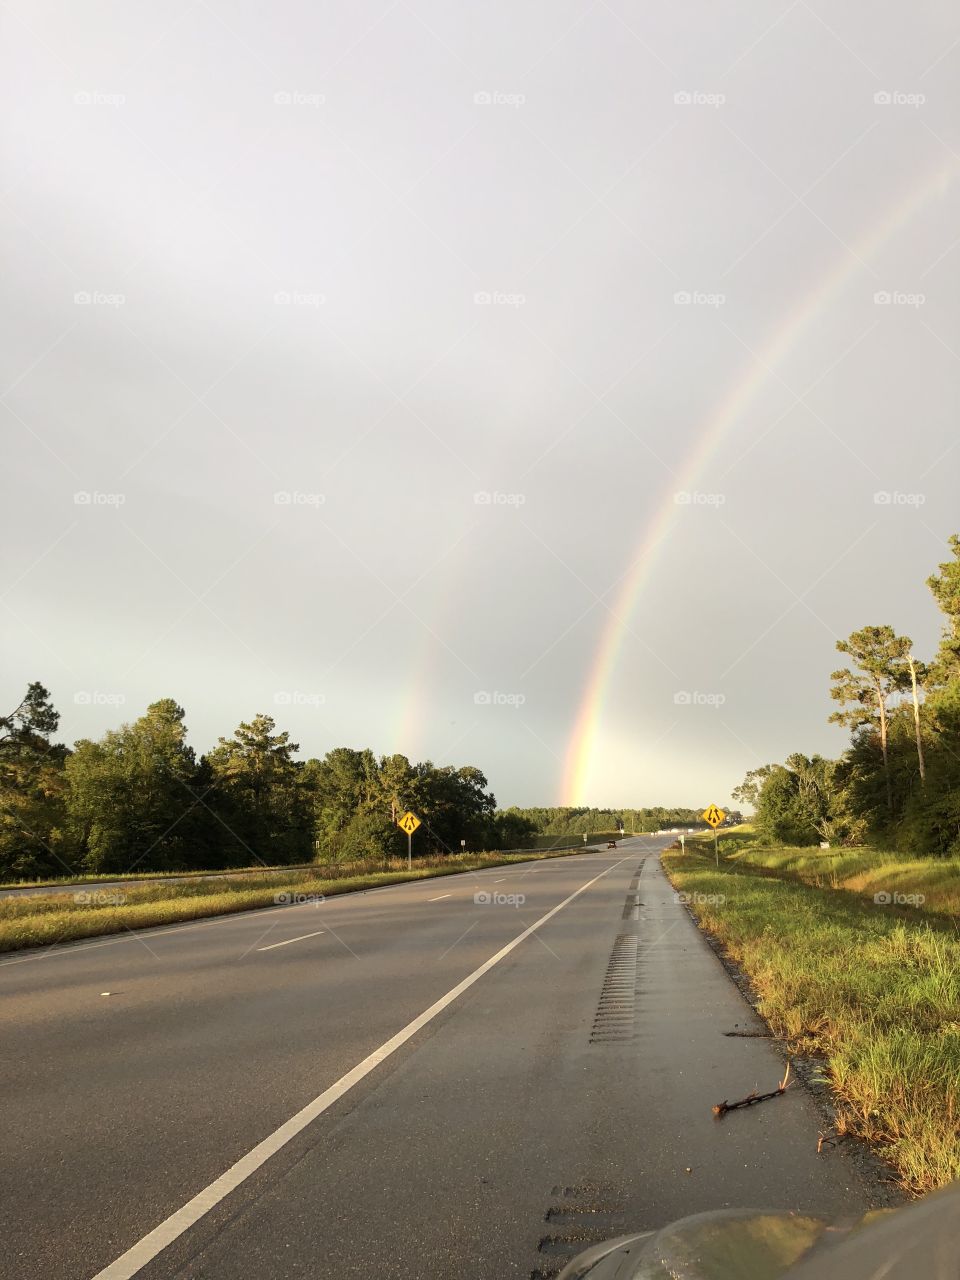 Double rainbow 🌈